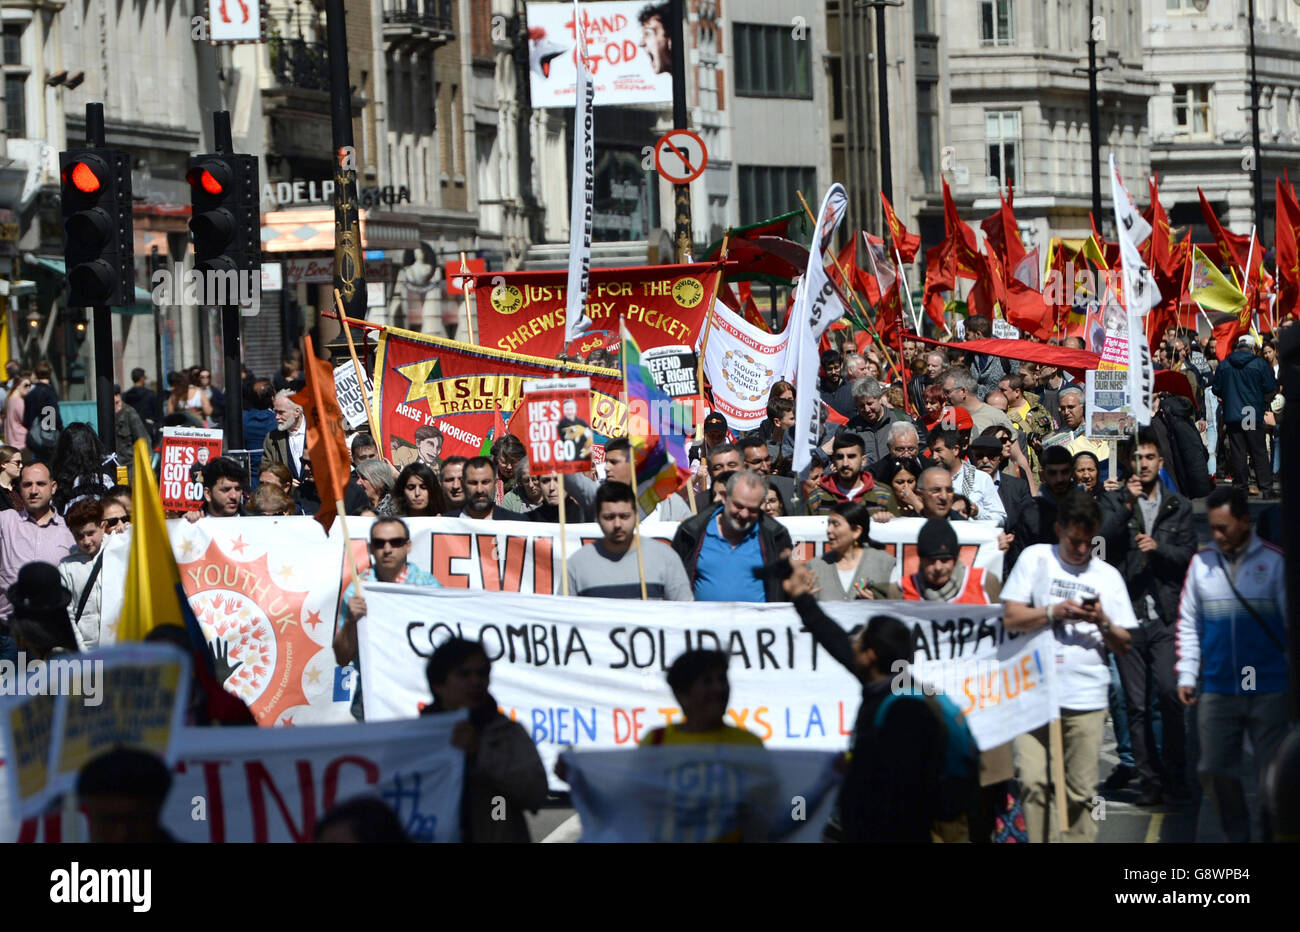 Tausende marschieren zum Trafalgar Square im Zentrum von London, um die Errungenschaften der Arbeiter bei einer Kundgebung am 1. Mai zu feiern, bei der Jeremy Corbyn den Antisemitismus verurteilte. Stockfoto